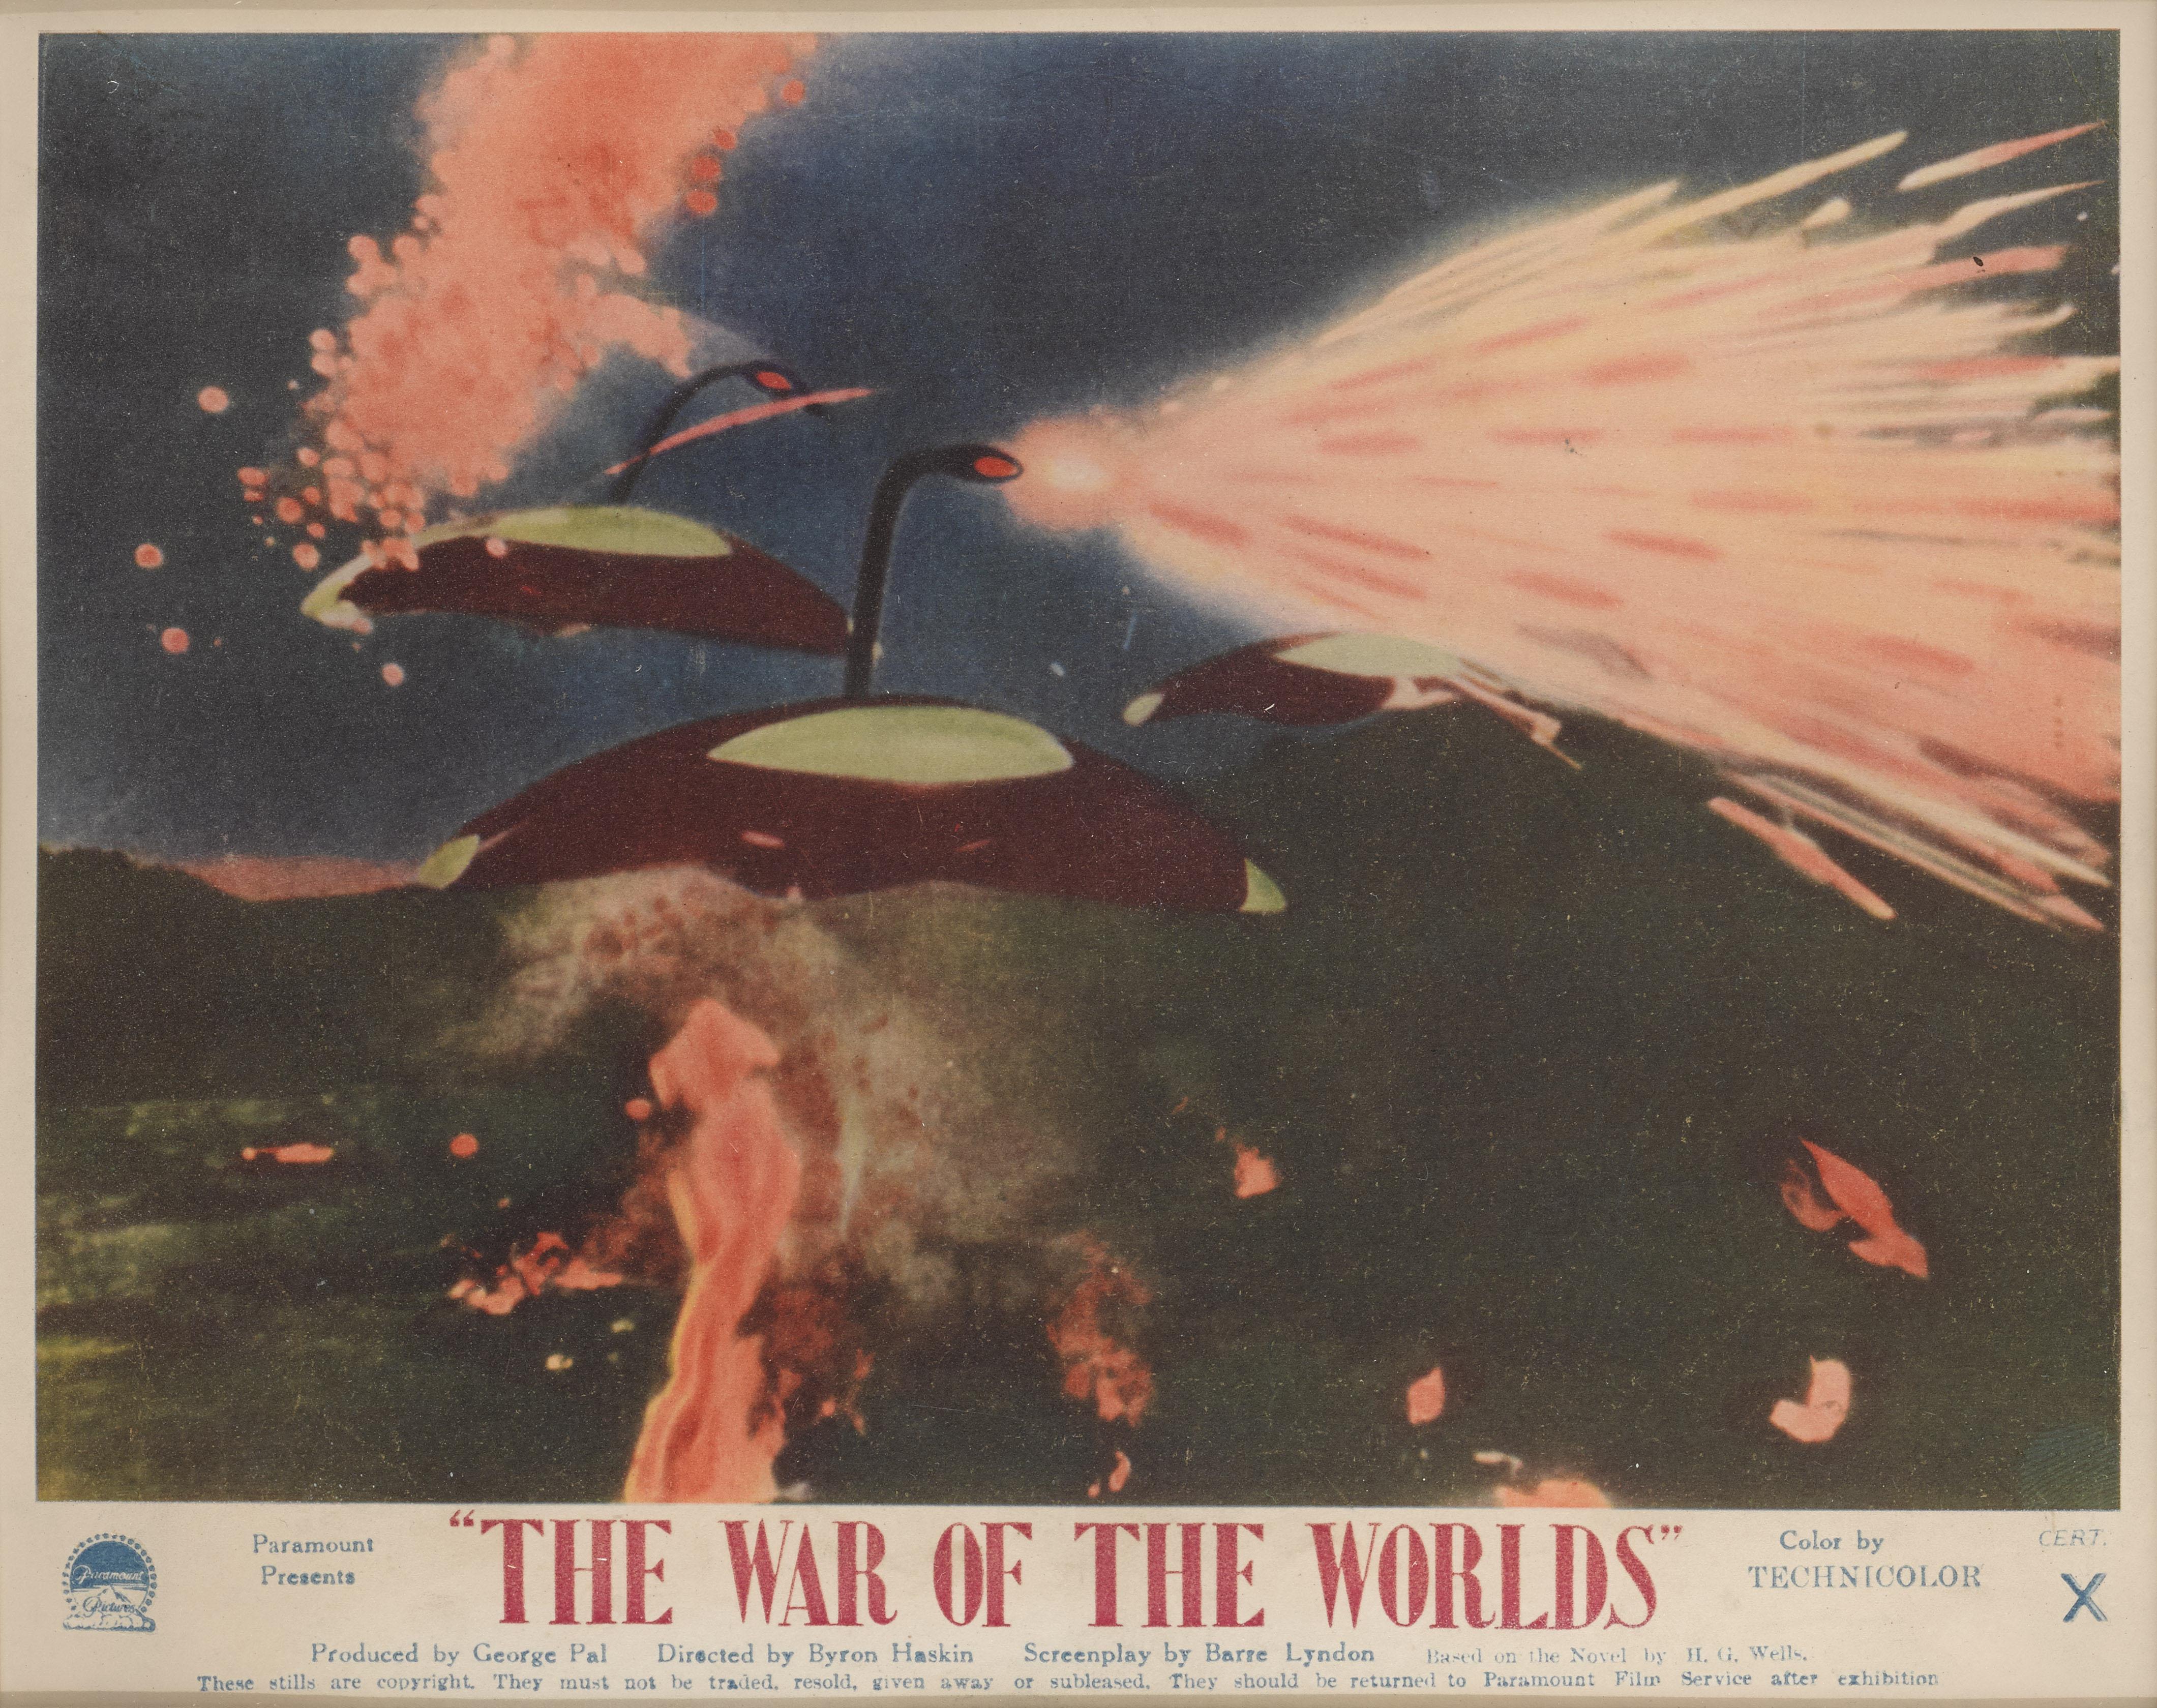 Original britische Eintrittskarte für The War of the Worlds 1953, die im Foyer des Kinos verwendet wurde.
Dieses Kunstwerk mit dem eindringenden Raumschiff ist die beste Karte aus dem 8er-Set.
Der Film ist einer der berühmtesten